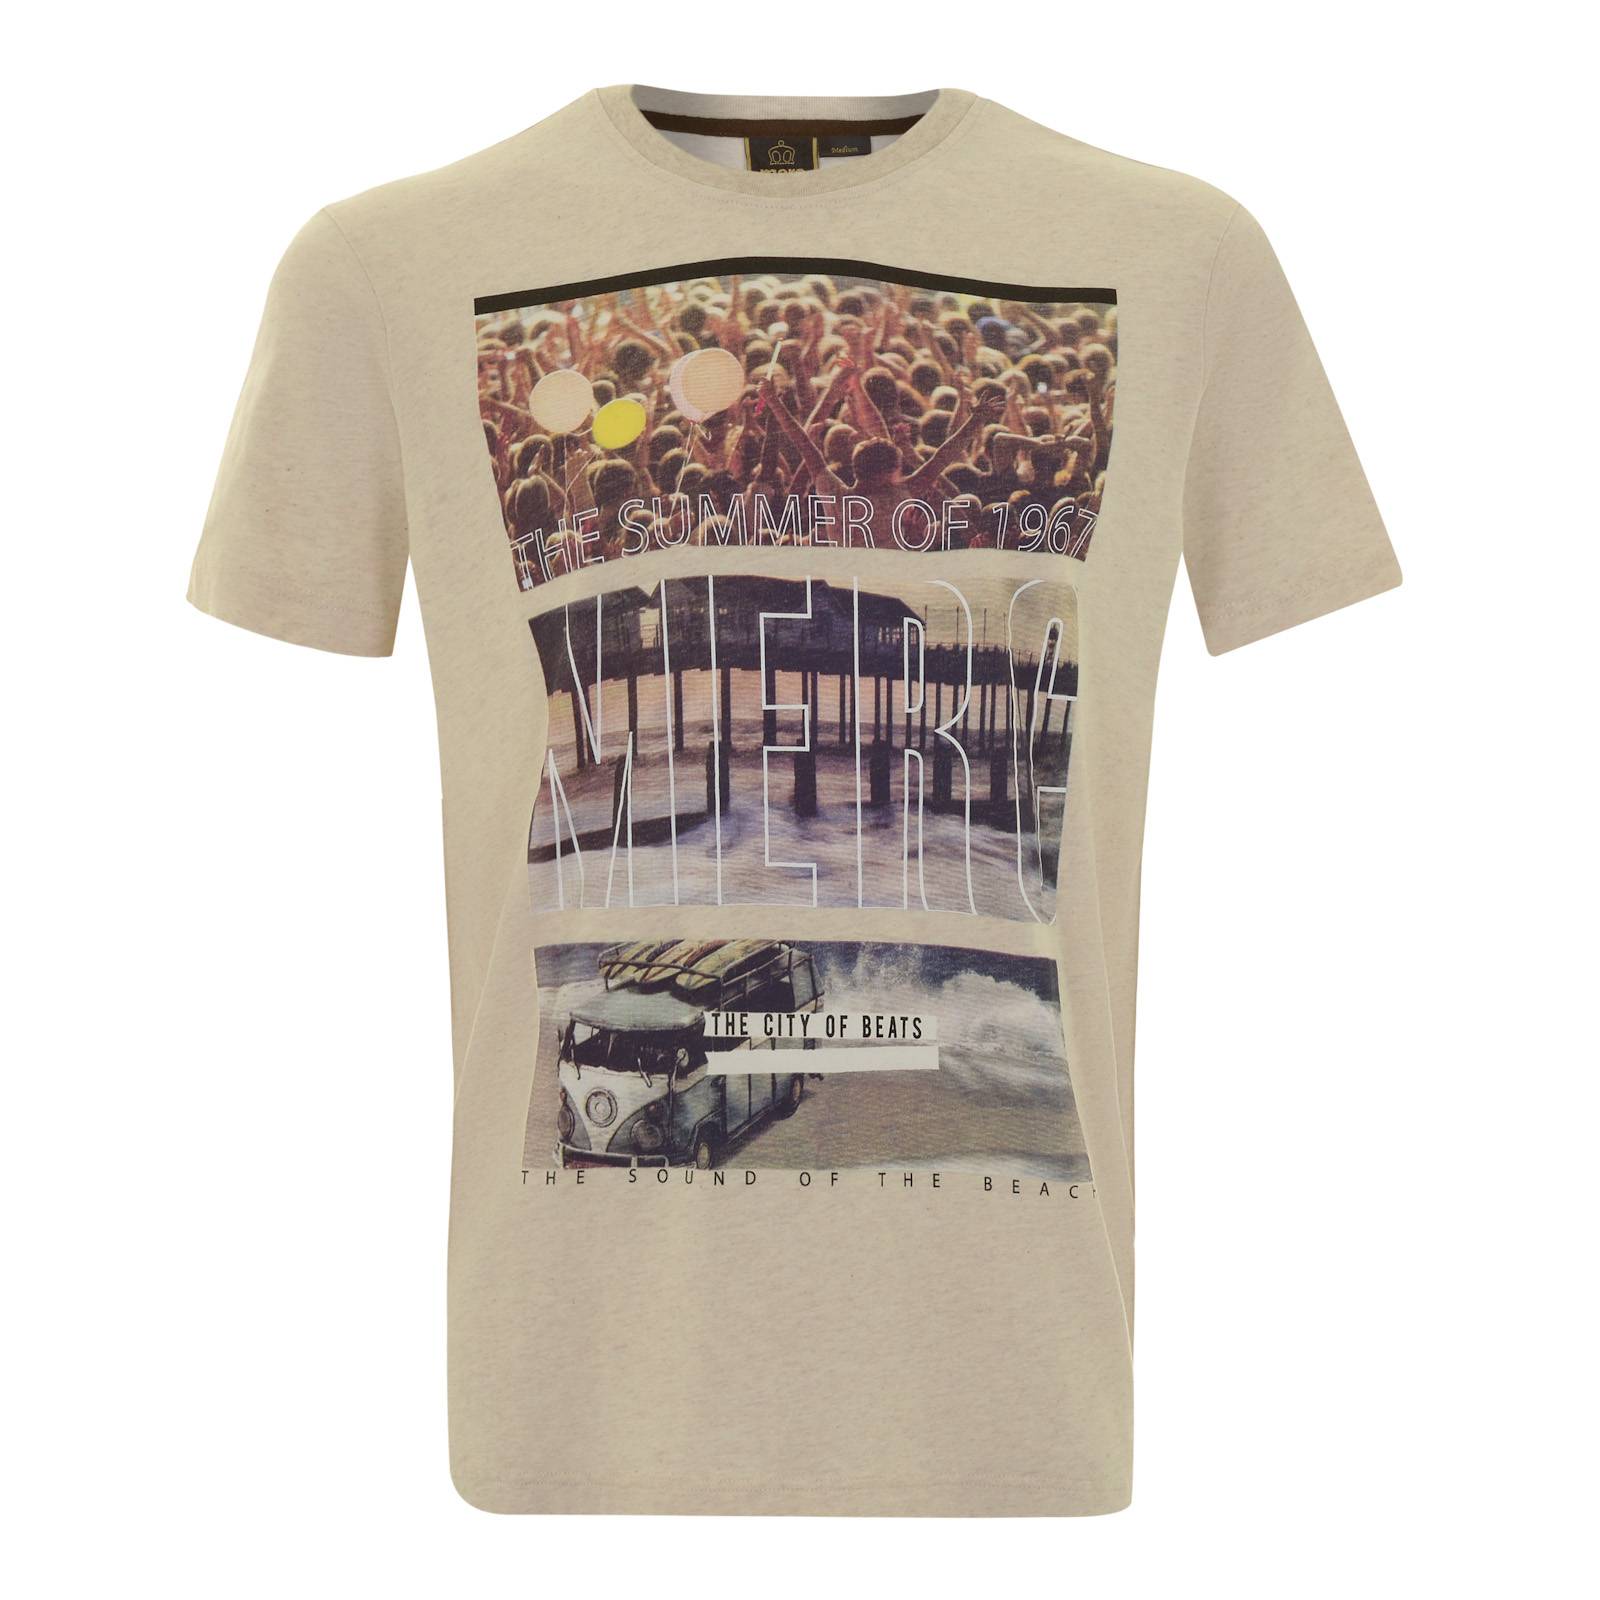 Мужская футболка Costello с ретро принтом, бежевая, бренда MERC, купить на официальном сайте со СКИДКОЙ!